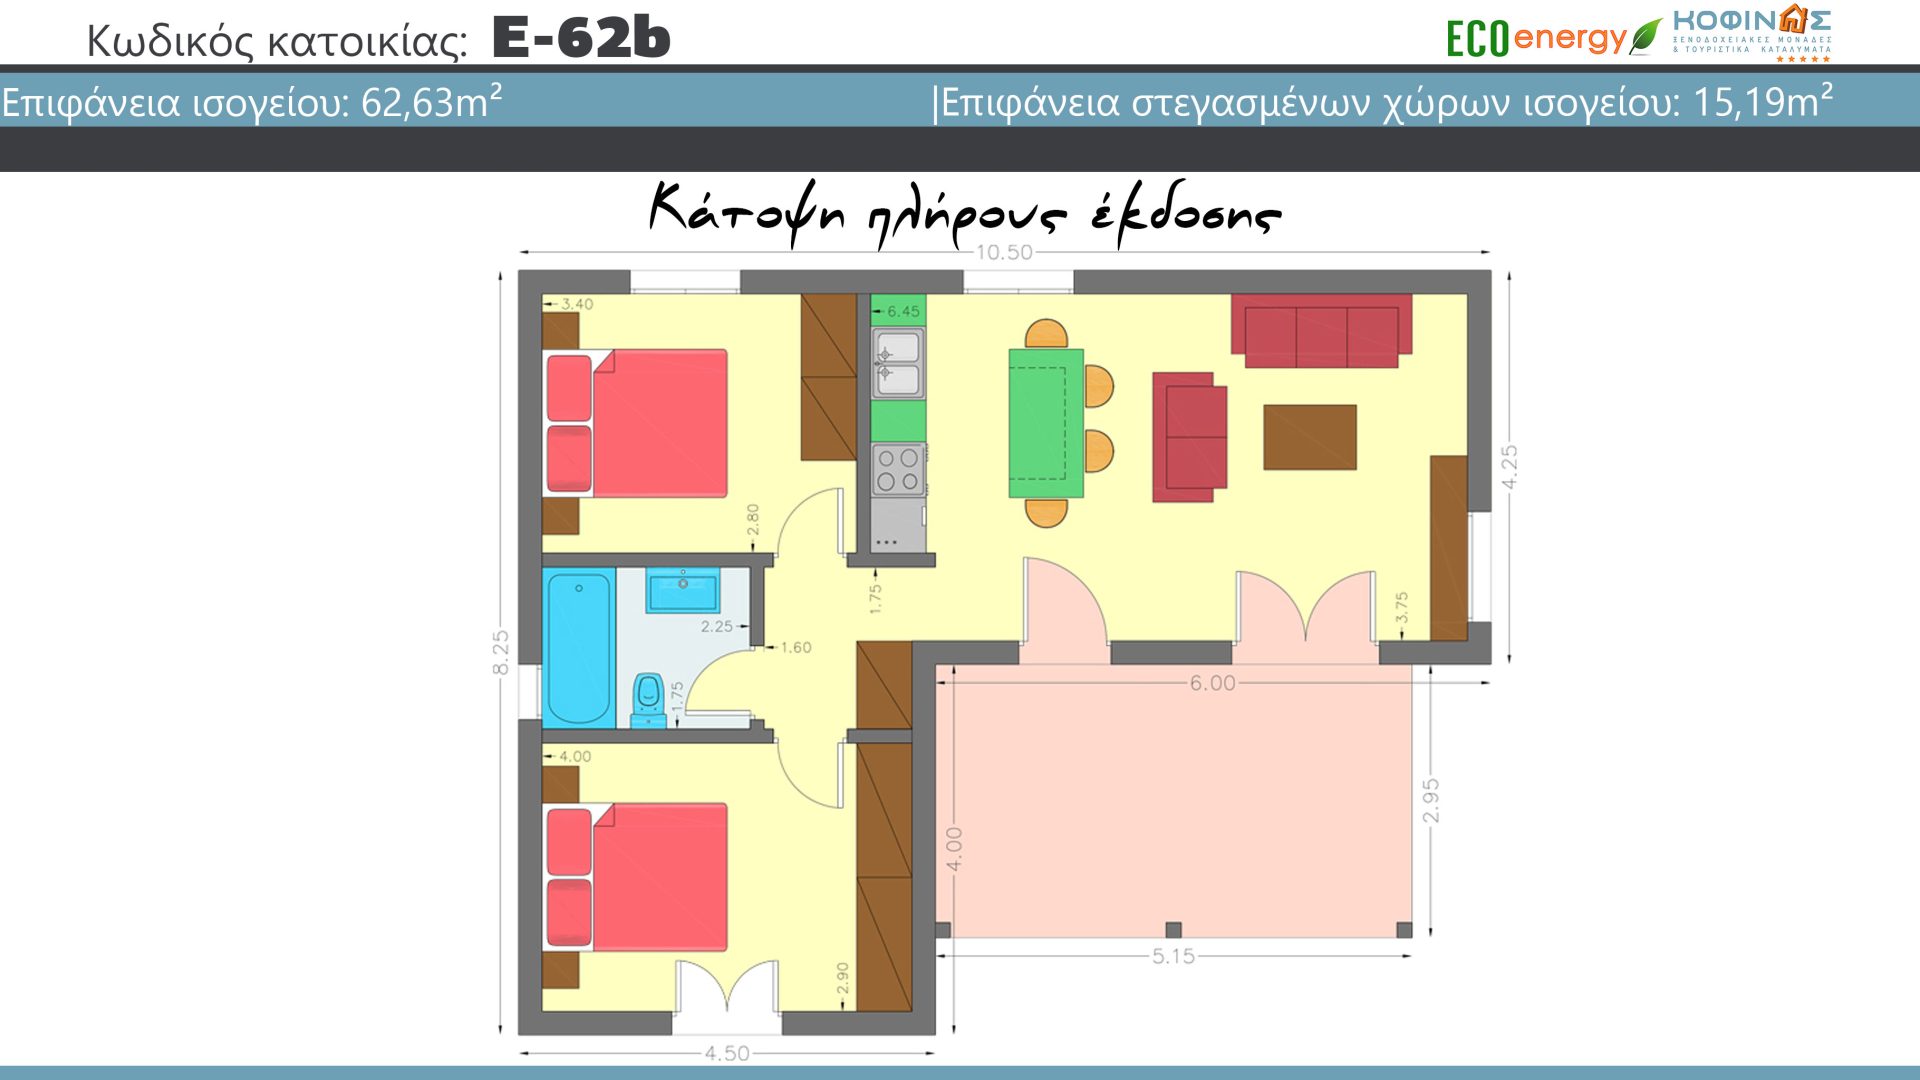 Συγκρότημα Κατοικιών E-62b, συνολικής επιφάνειας 3 x 62,63 = 187,89 τ.μ., συνολική επιφάνεια στεγασμένων χώρων 45.57 τ.μ.